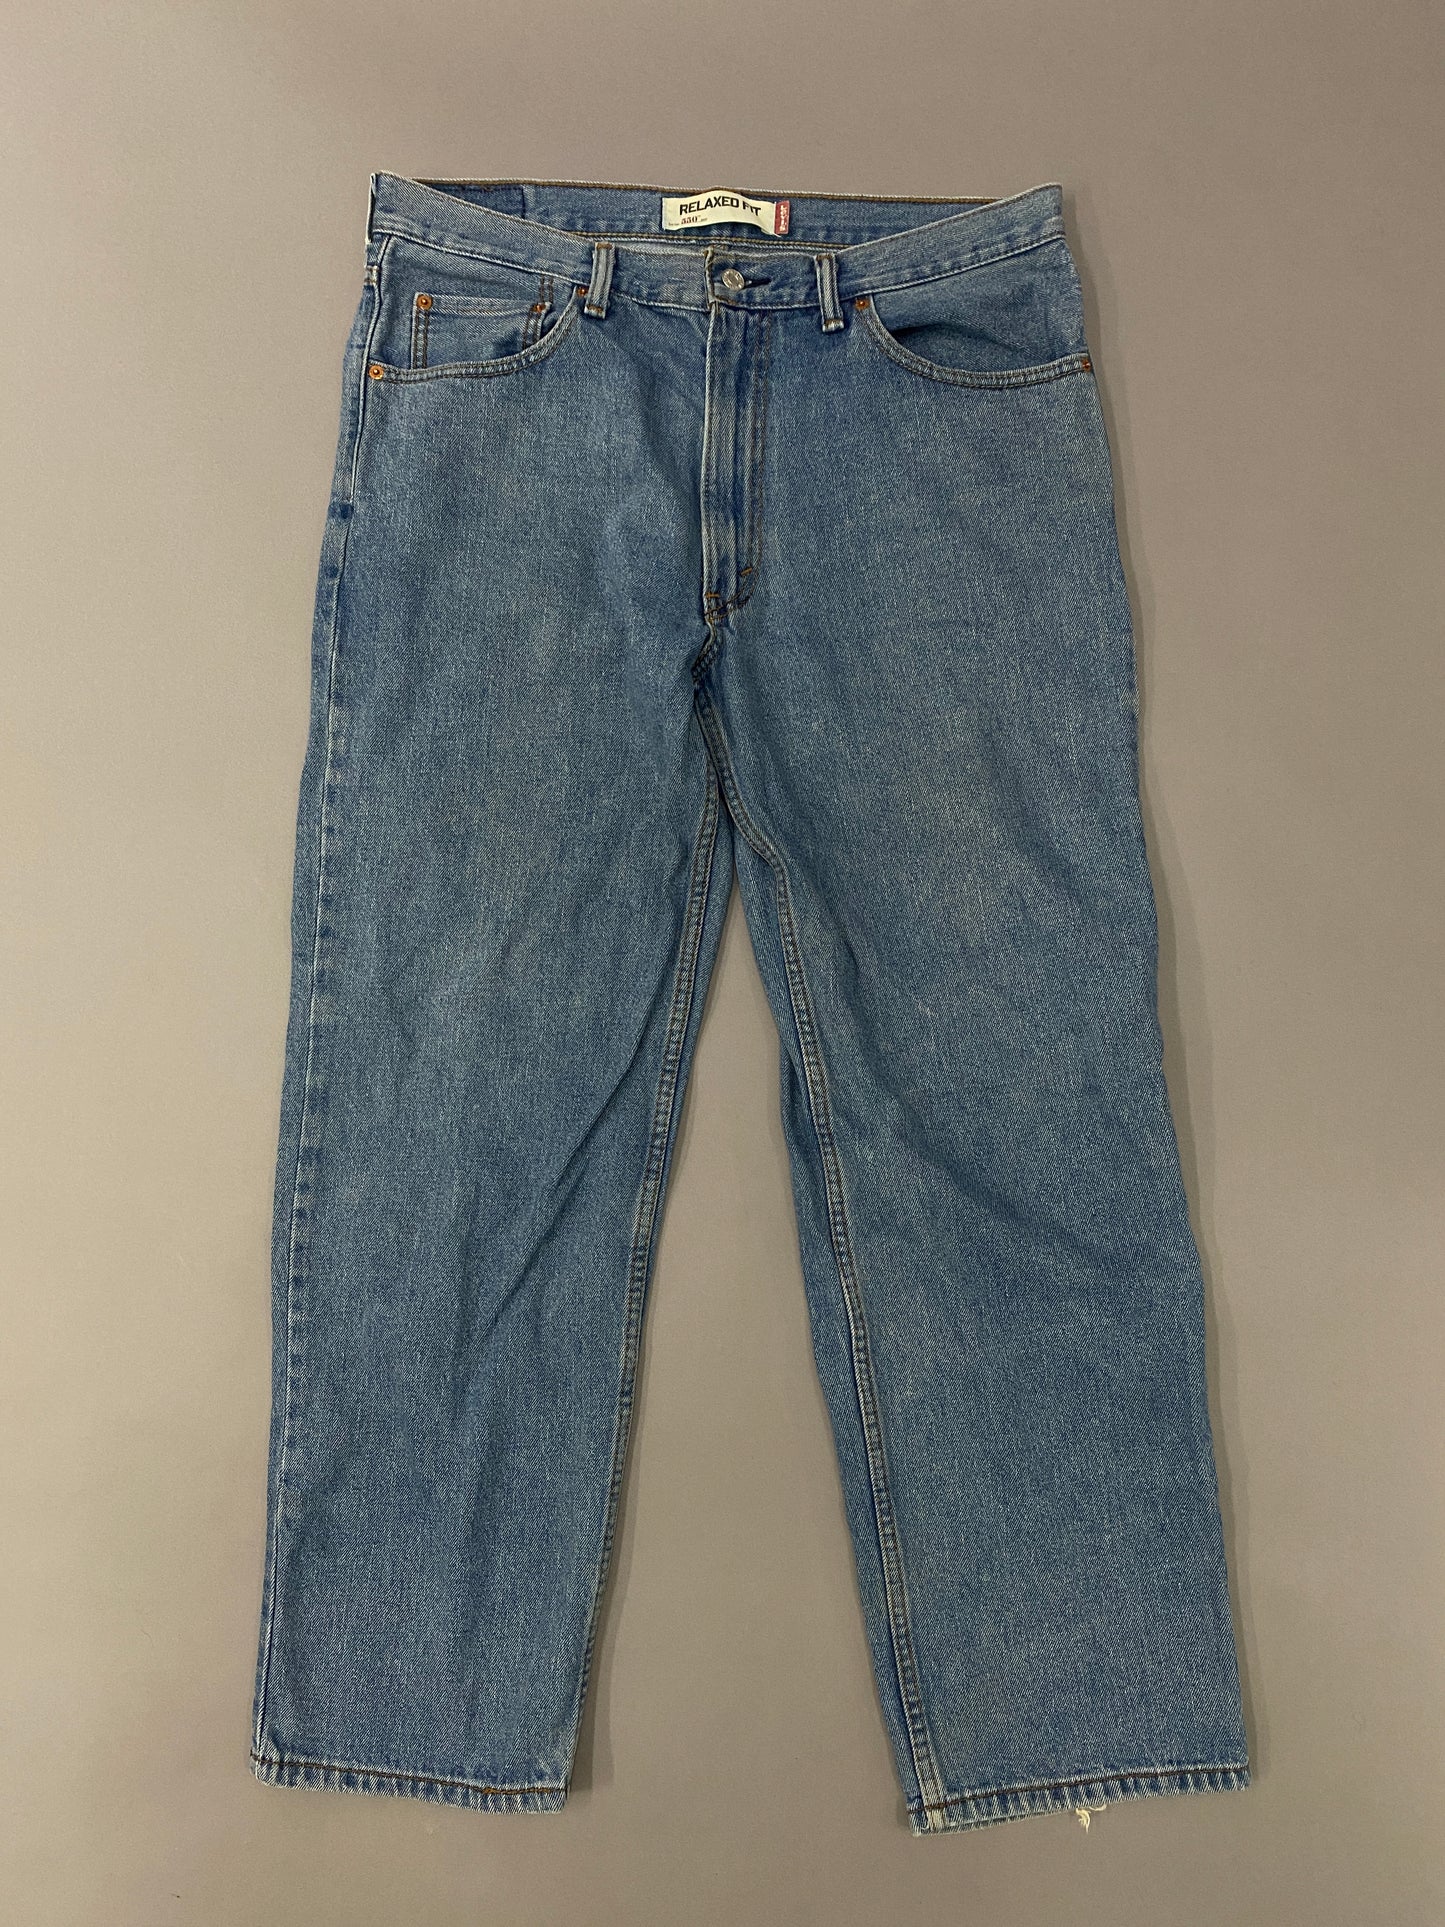 Levi's 550 Jeans - 36x30